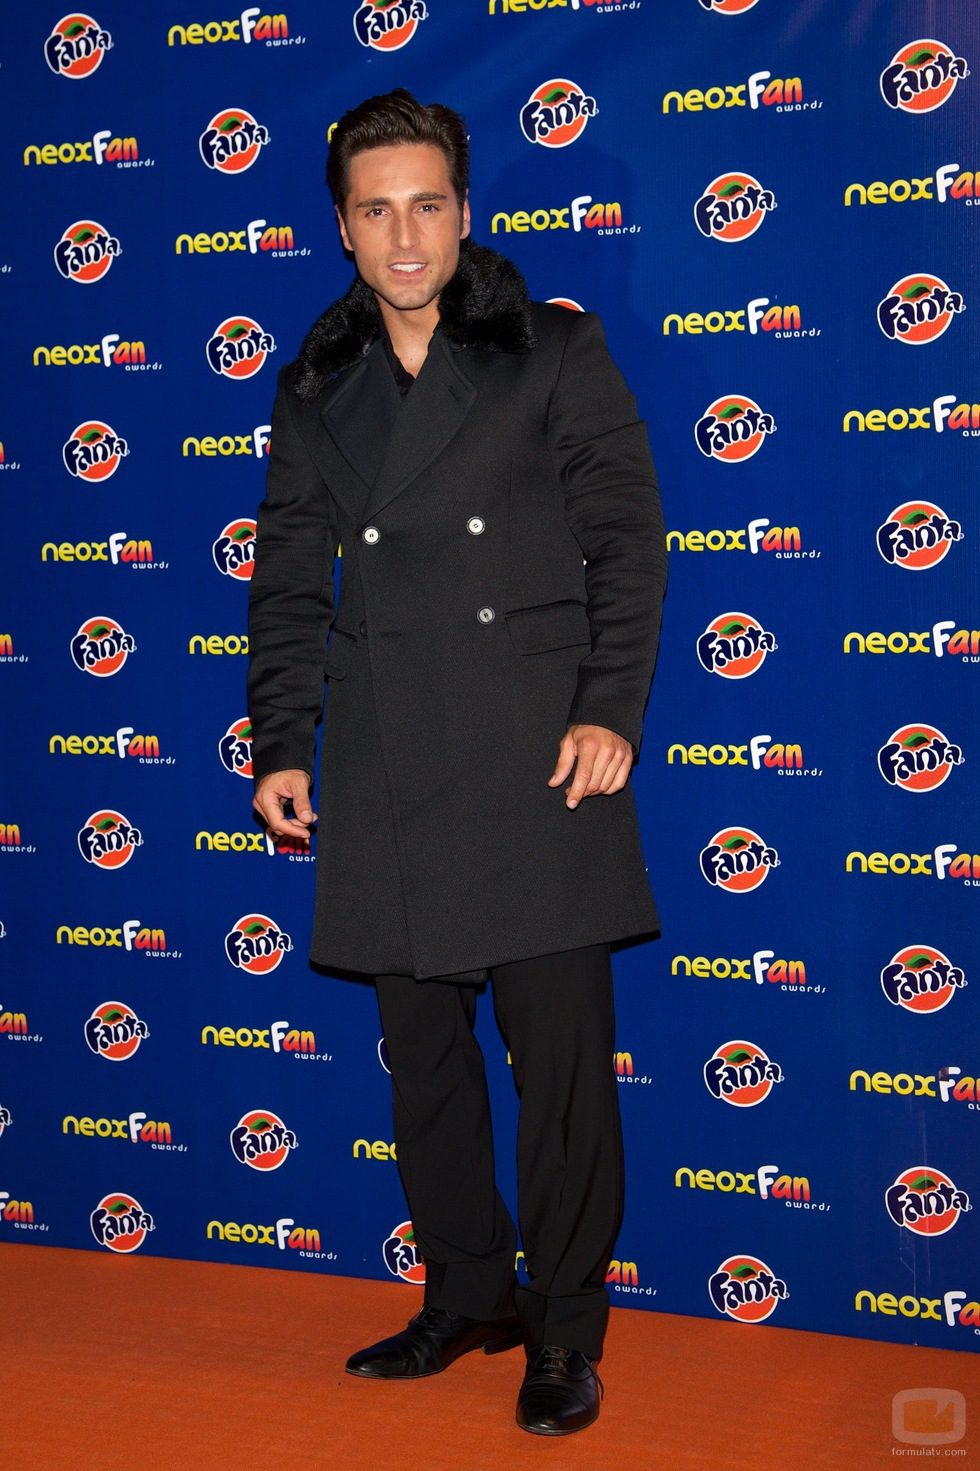 David Bustamante, Mejor Cuerpazo en los Neox Fan Awards 2012